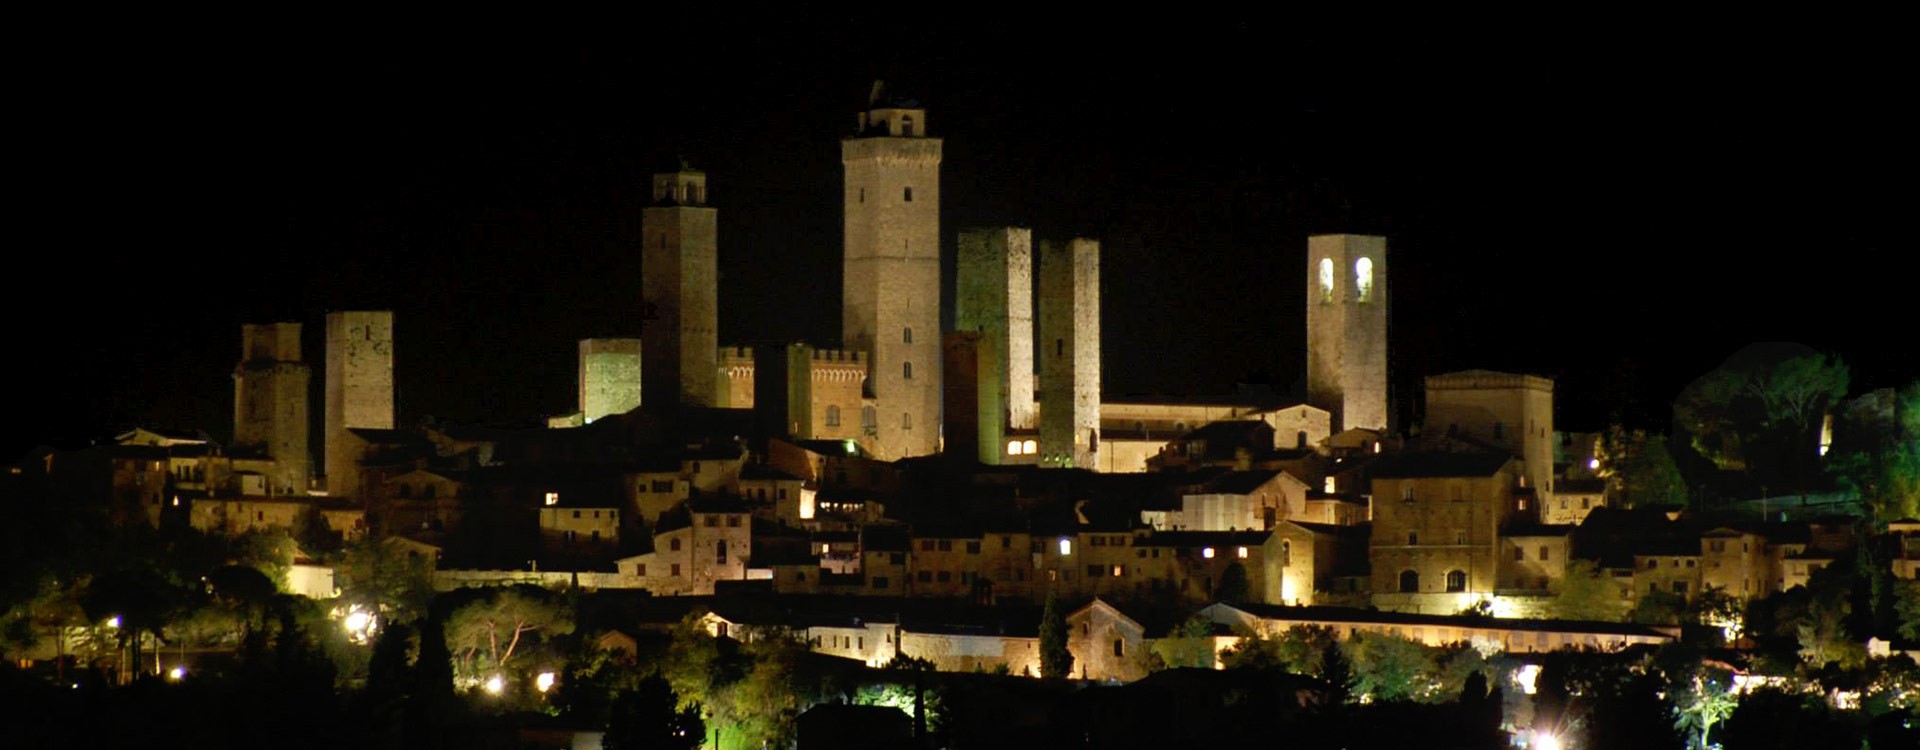 San Gimignano night view